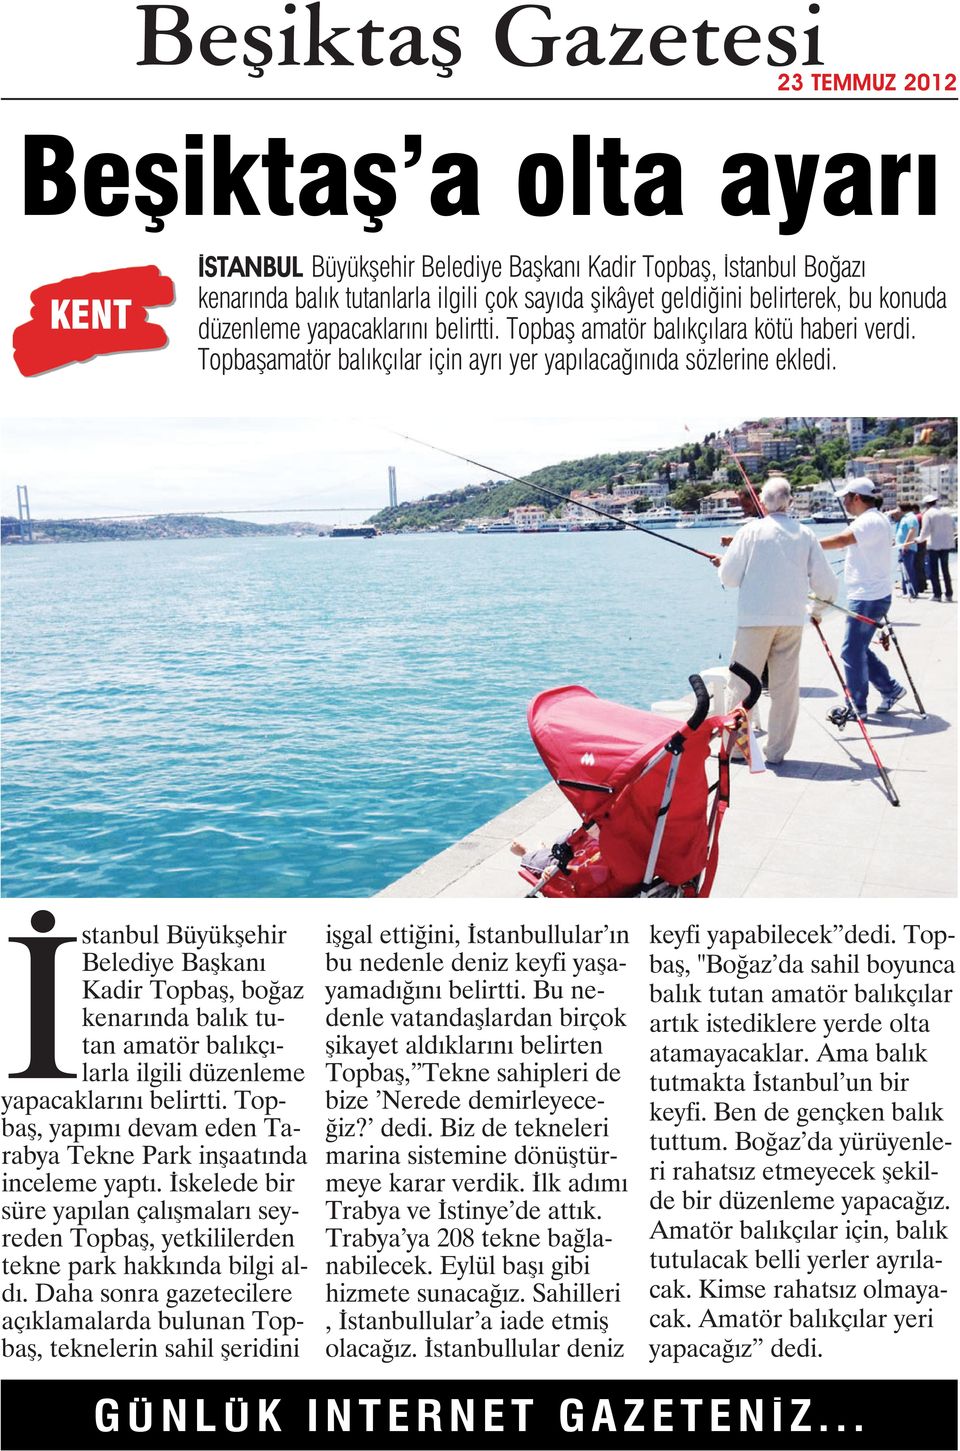 İstanbul Büyükşehir Belediye Başkanı Kadir Topbaş, boğaz kenarında balık tutan amatör balıkçılarla ilgili düzenleme yapacaklarını belirtti.